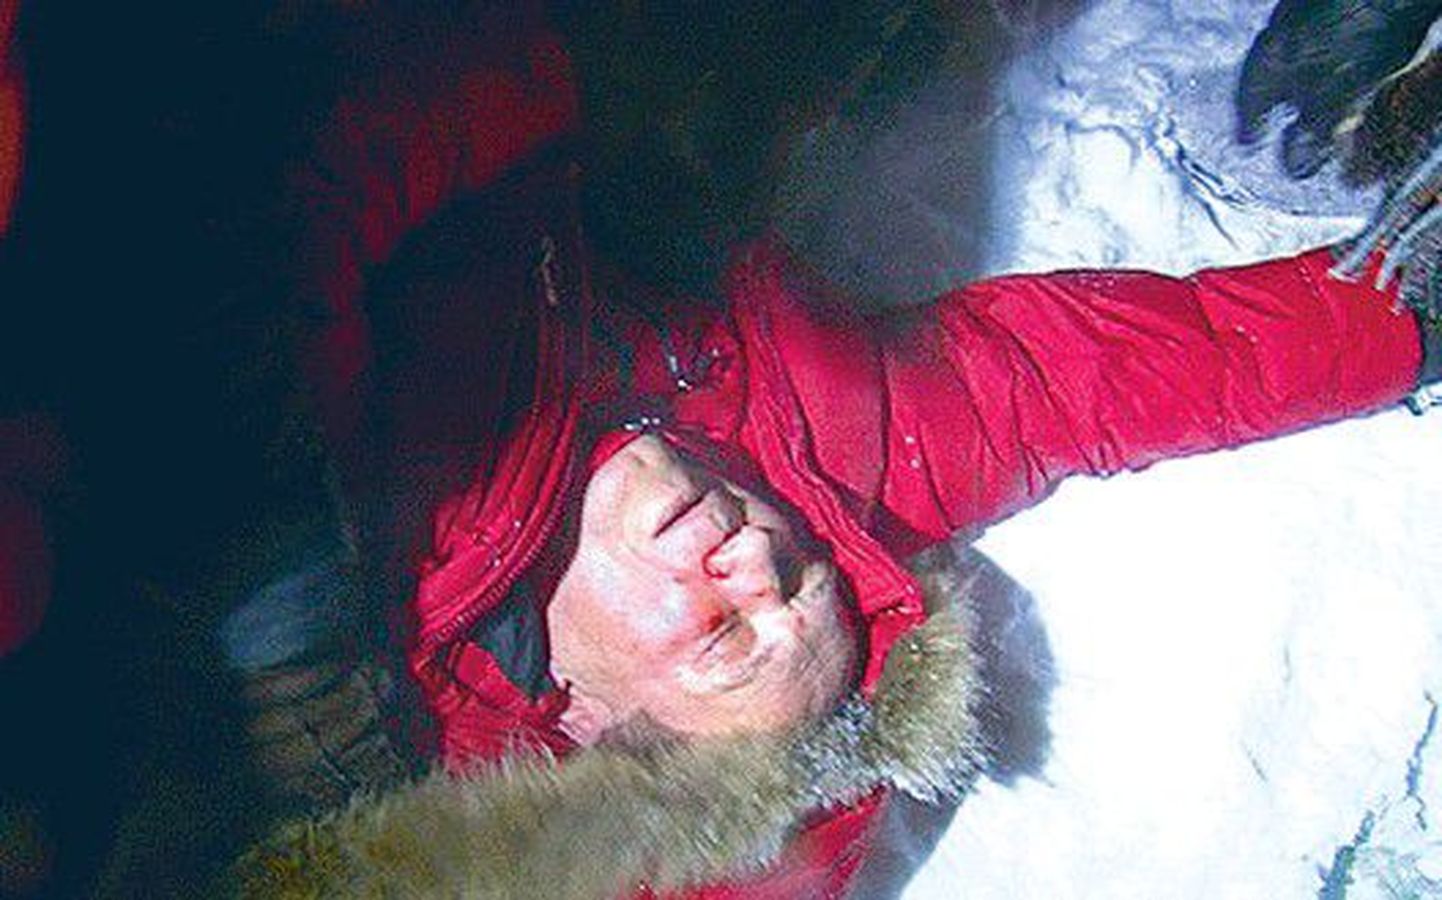 Кандидат в президенты Владимир Некляев в позавчерашней драке потерял сознание и рухнул на снег. Его доставили в больницу, откуда он был выкраден.